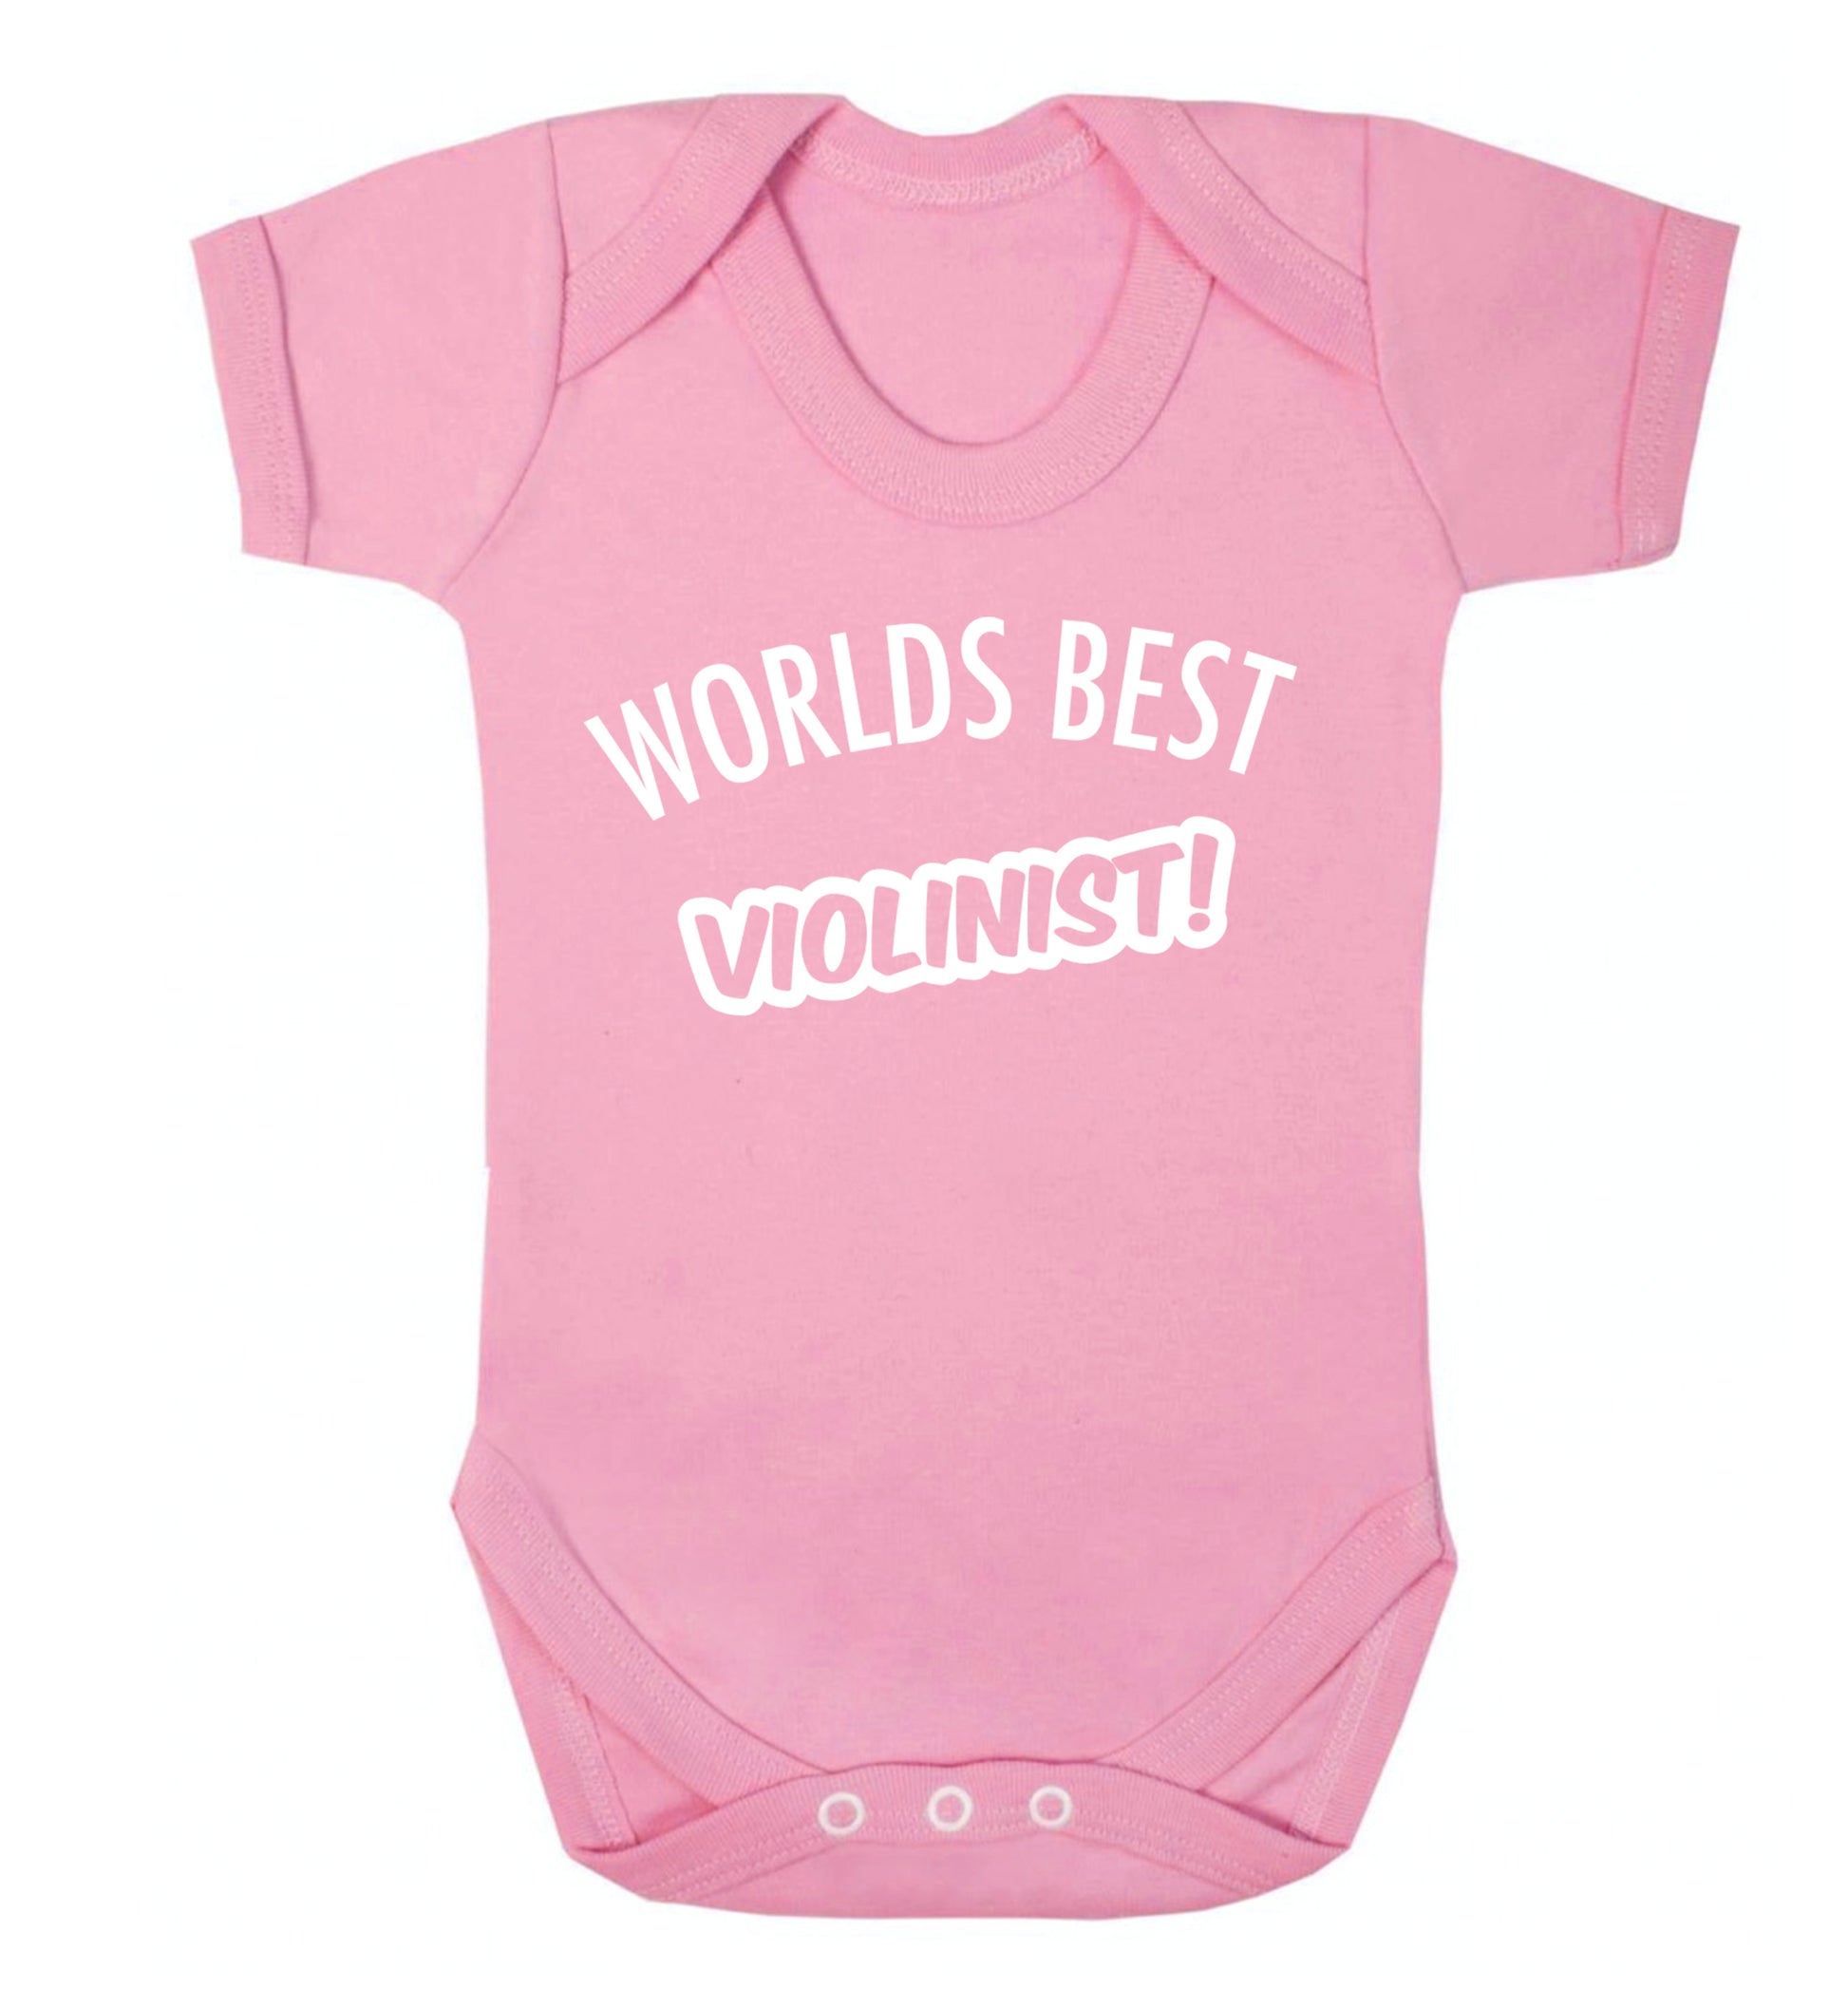 Worlds best violinist Baby Vest pale pink 18-24 months